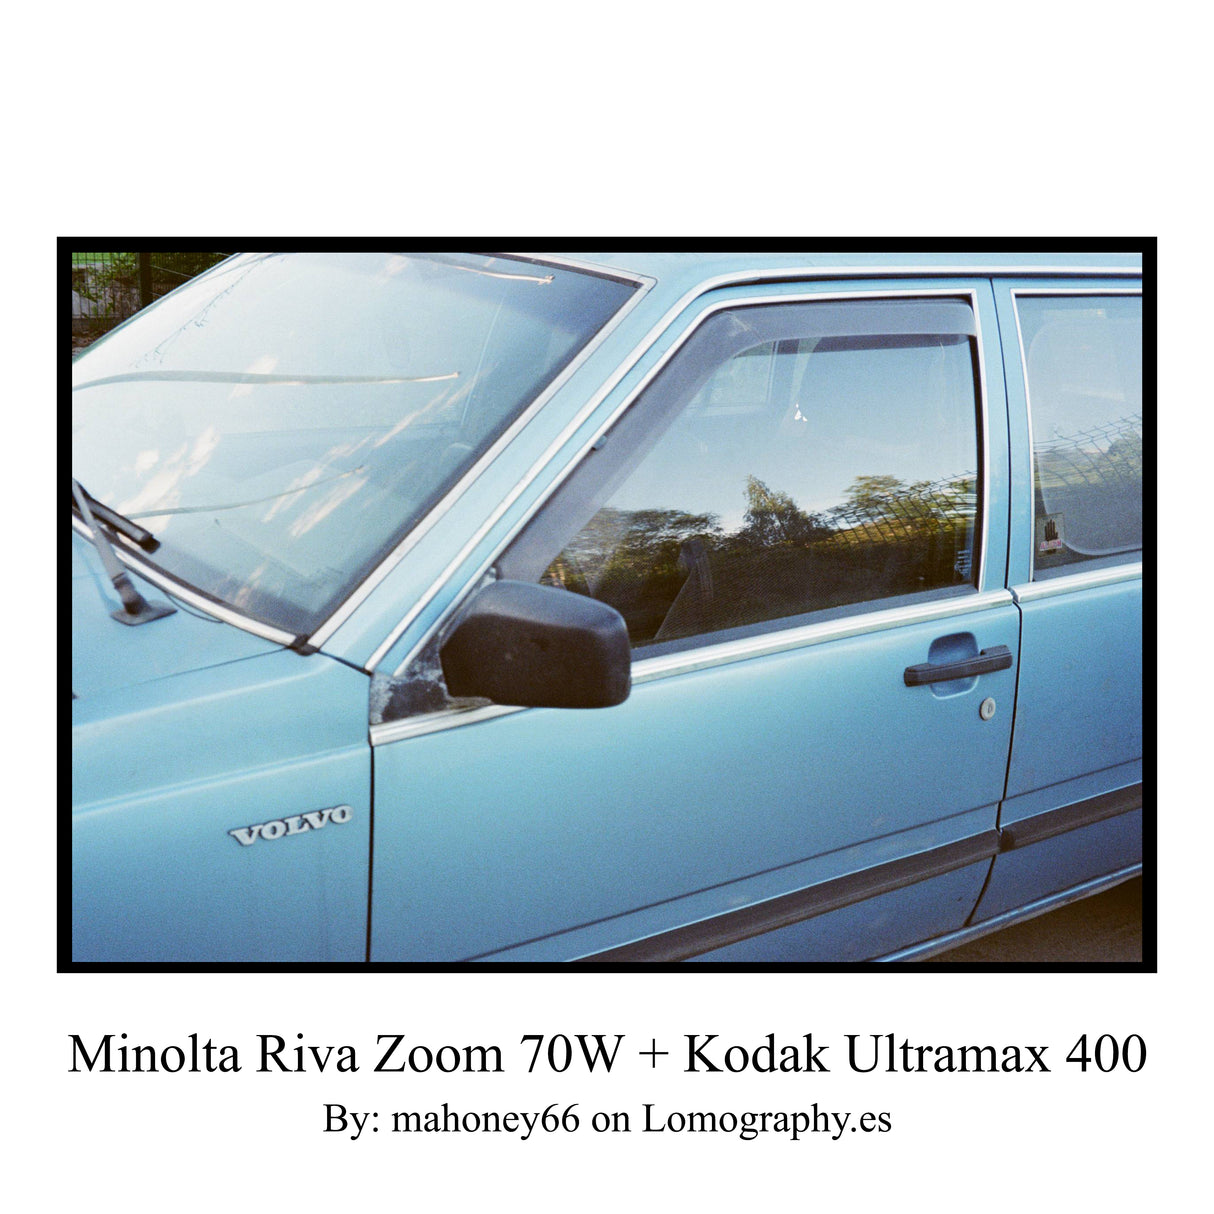 Minolta Riva Zoom 70W